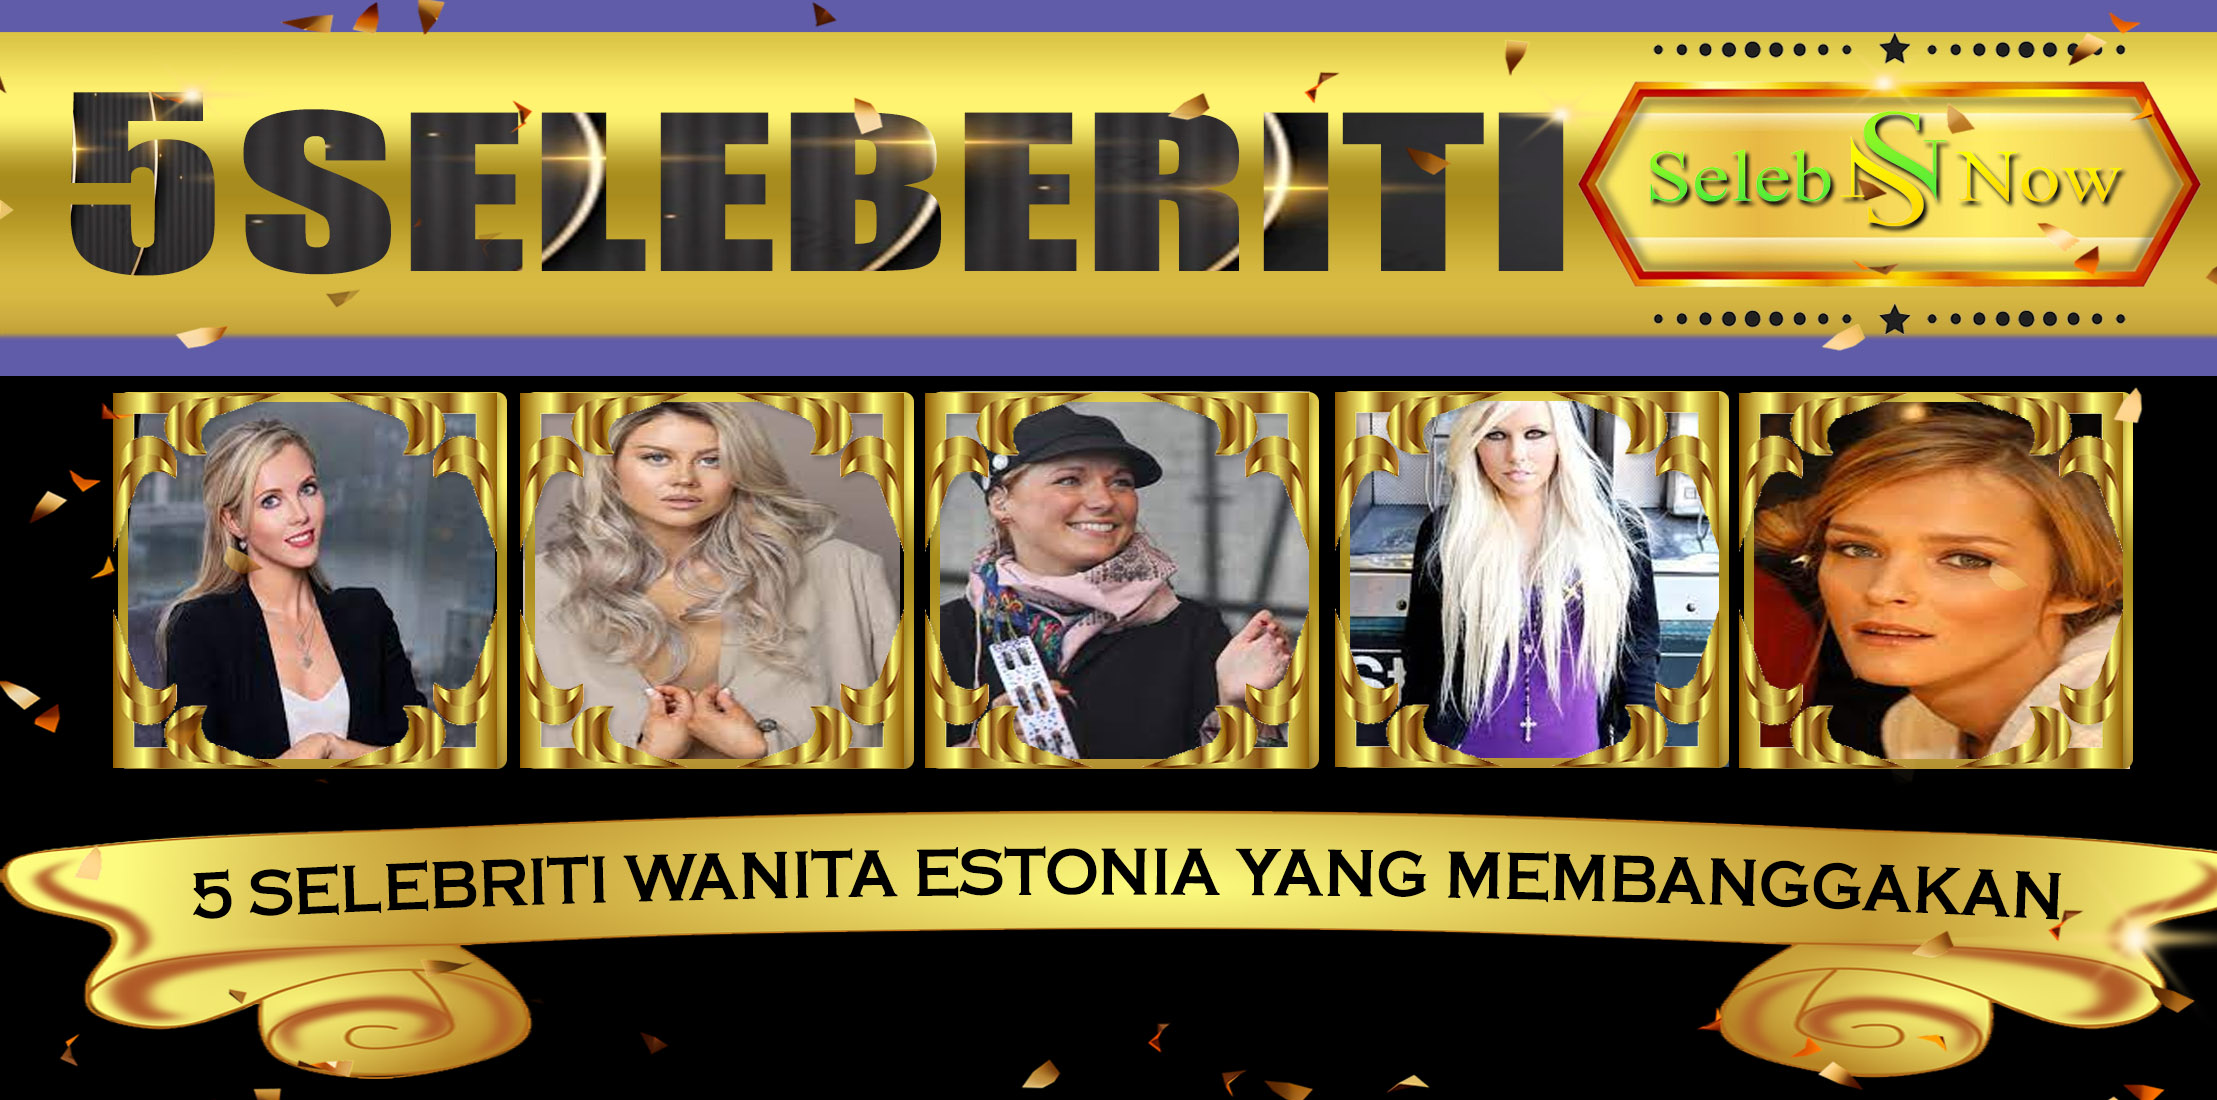 5 Selebriti Wanita Estonia